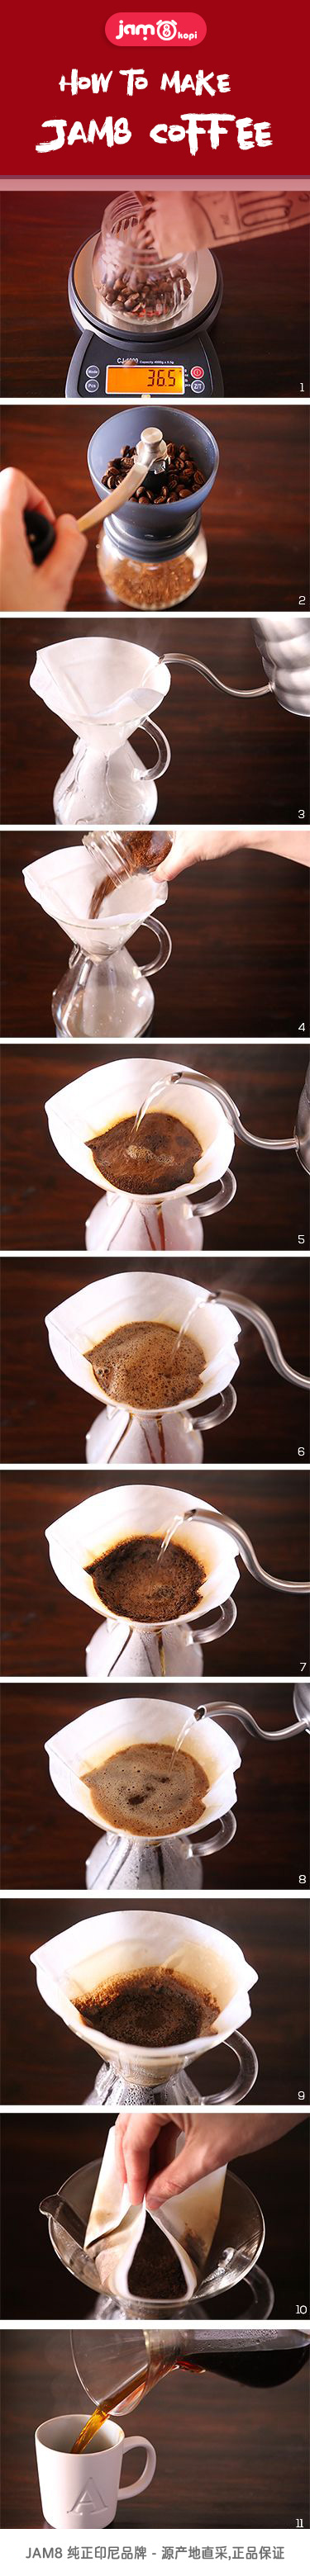 How-To-Make-Coffee.jpg